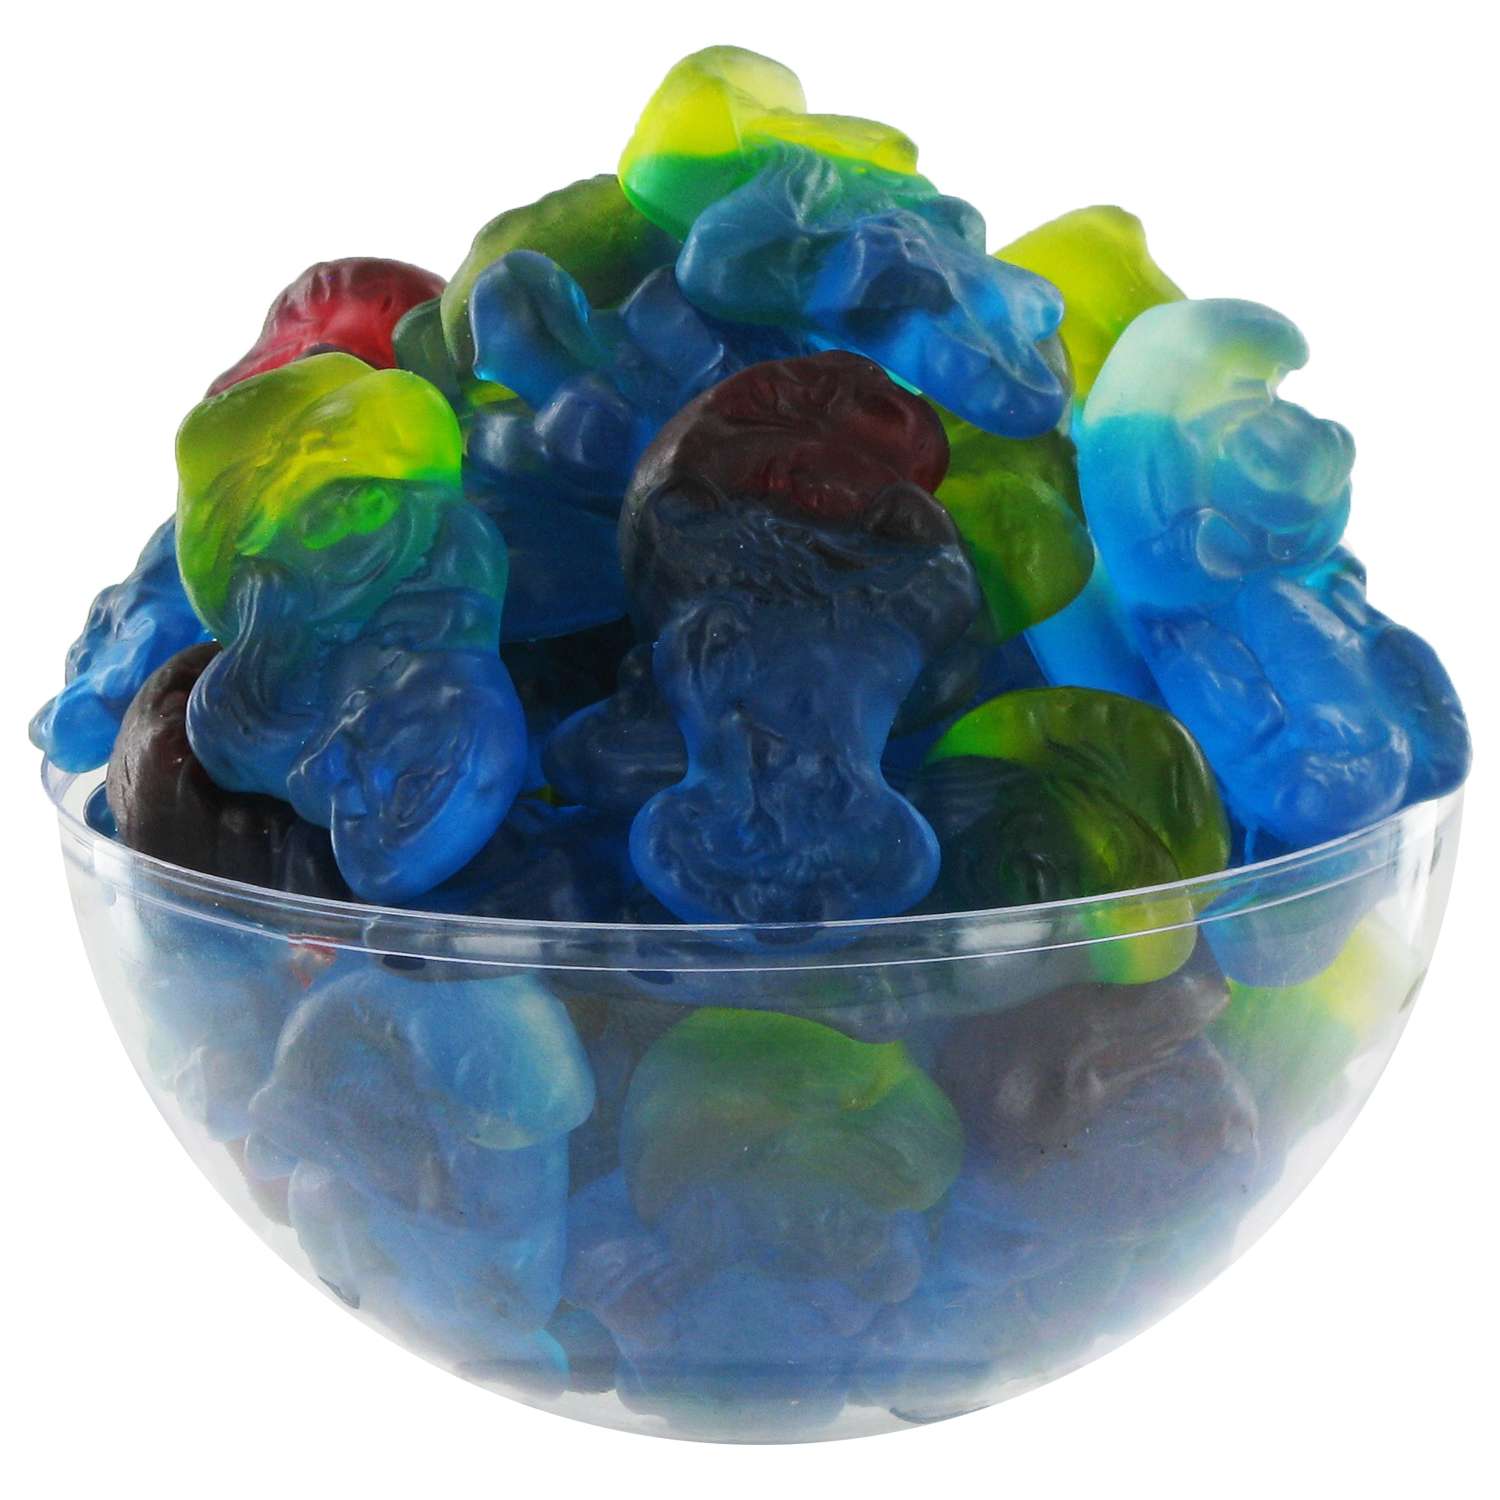 Tétines bleues candies (colorent la langue) - 2kg500